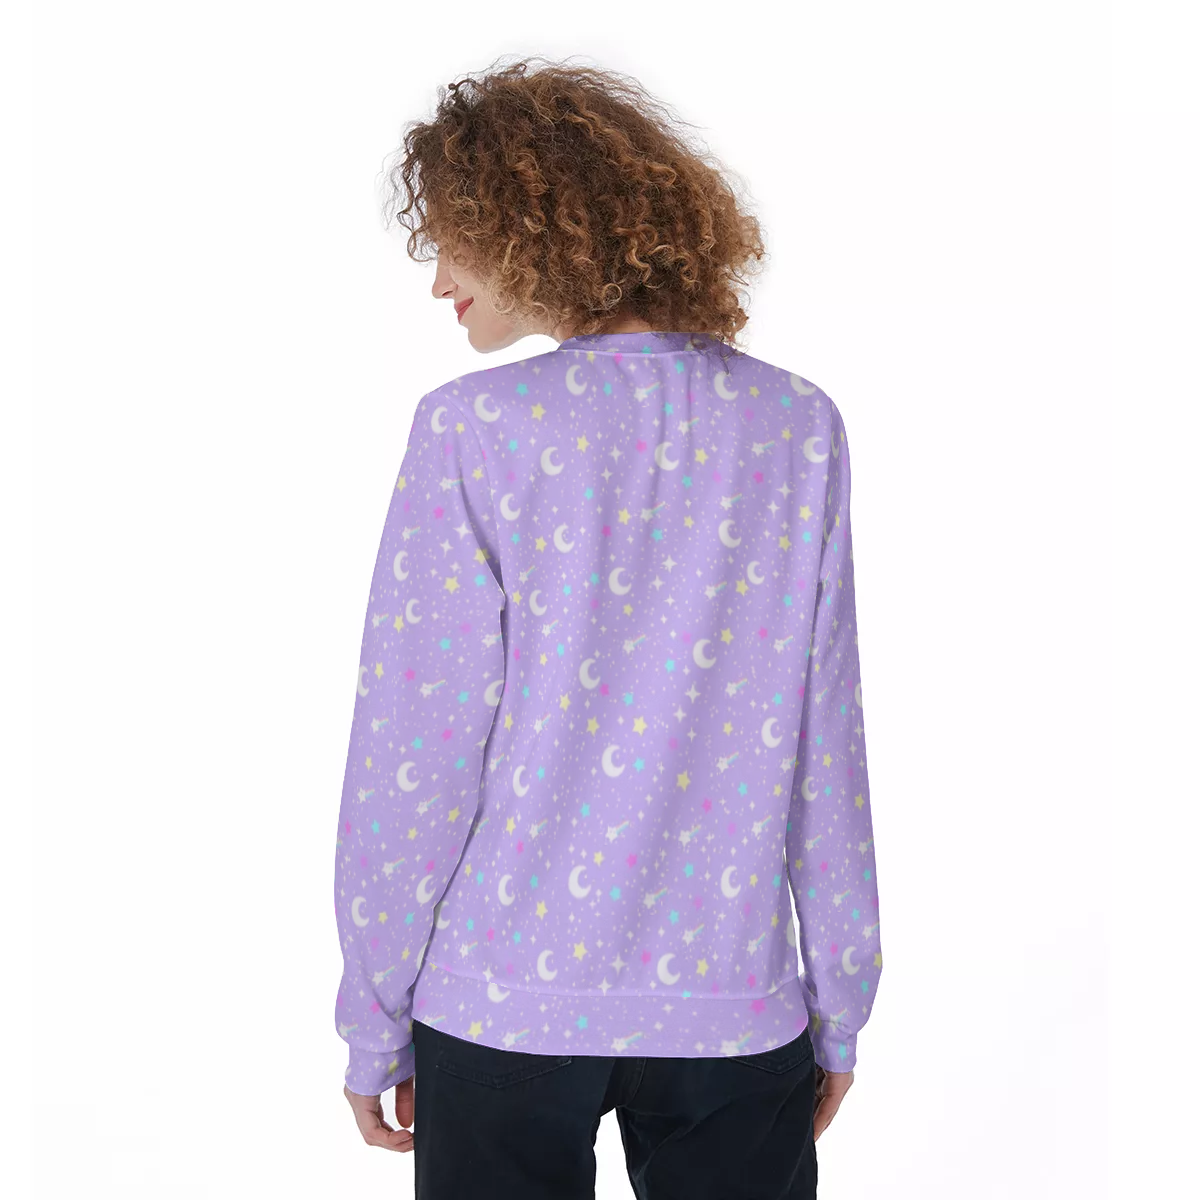 Starry Glitter Purple Unisex Cozy Sweatshirt